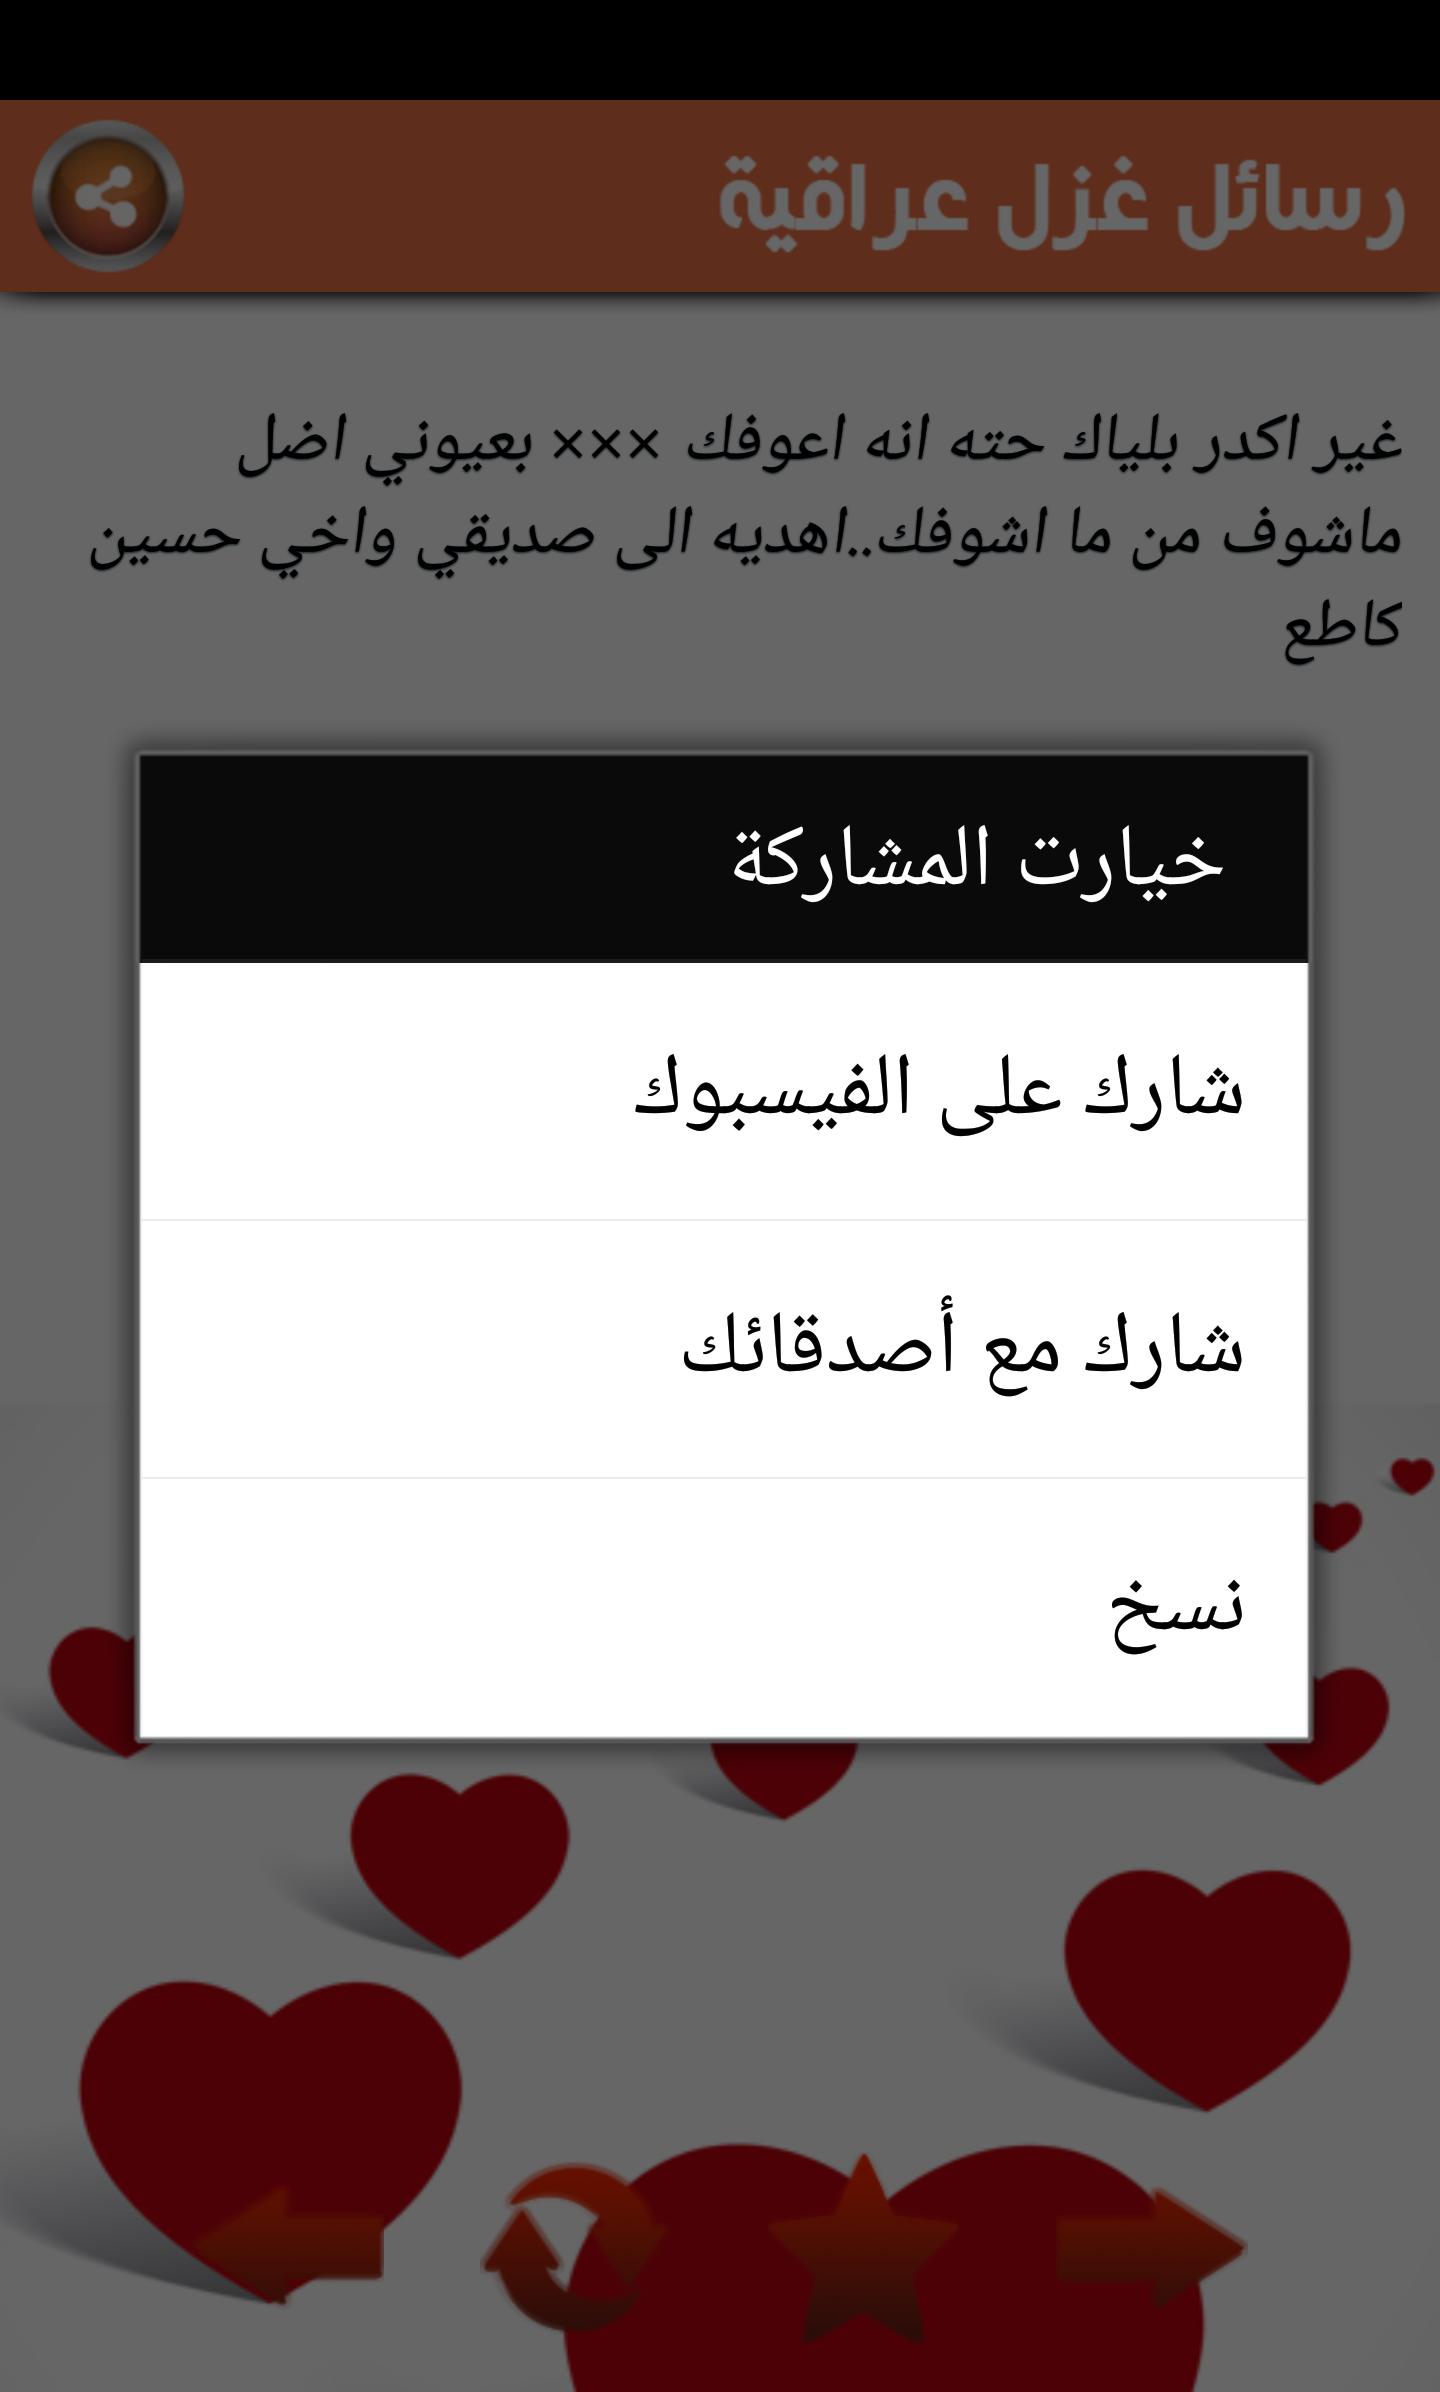 رسائل حب عراقية عيد الحب 2017 For Android Apk Download